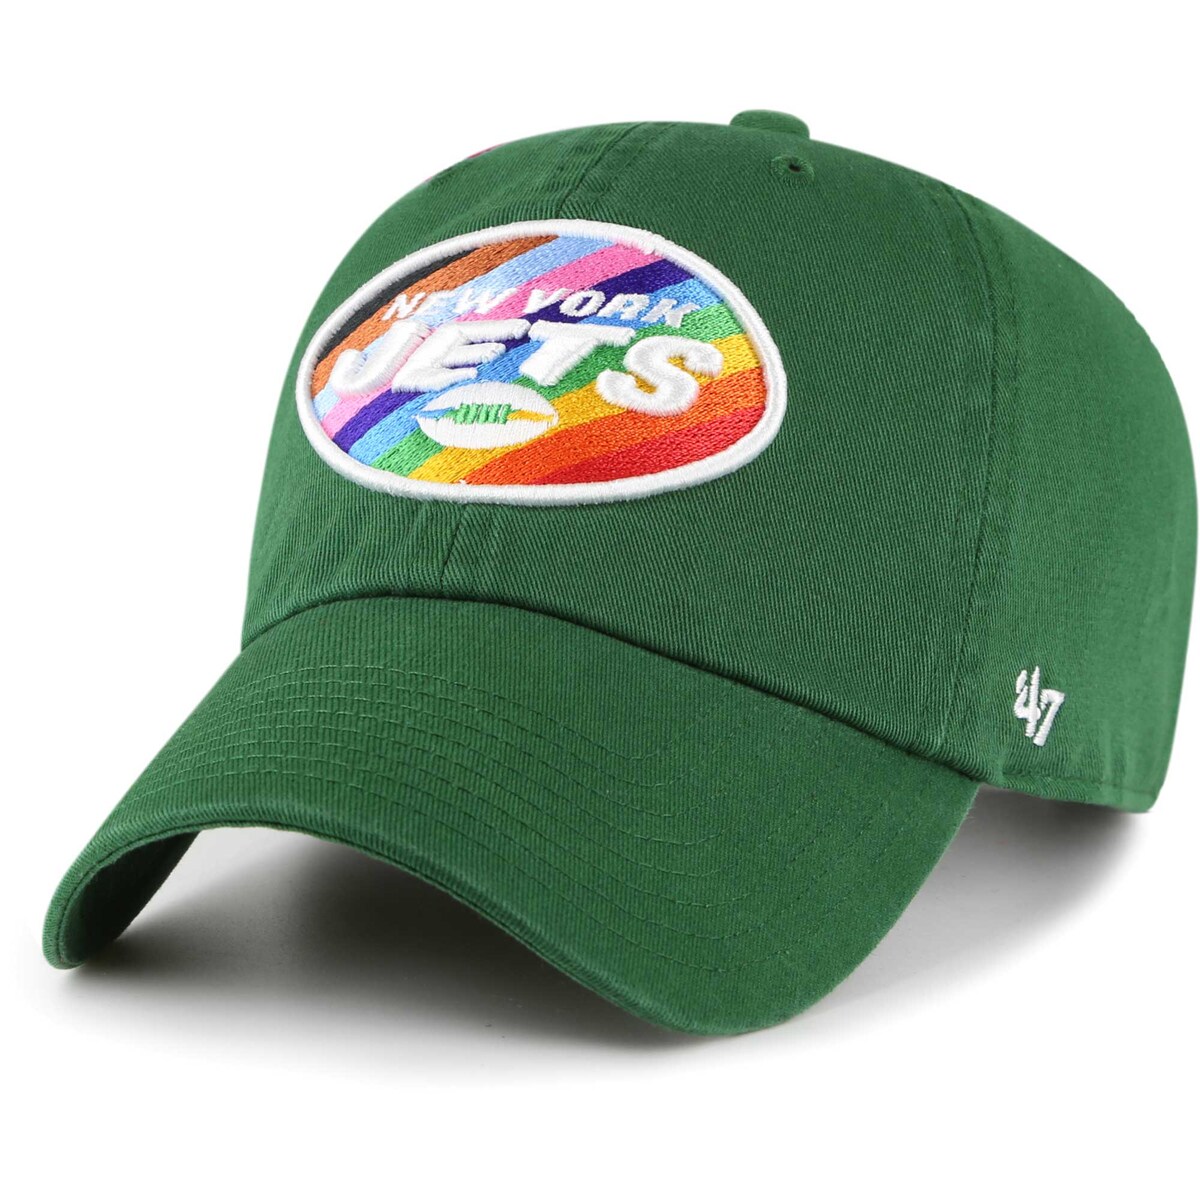 Men's '47 Green New York Jets Pride Cleanup Adjustable Hat